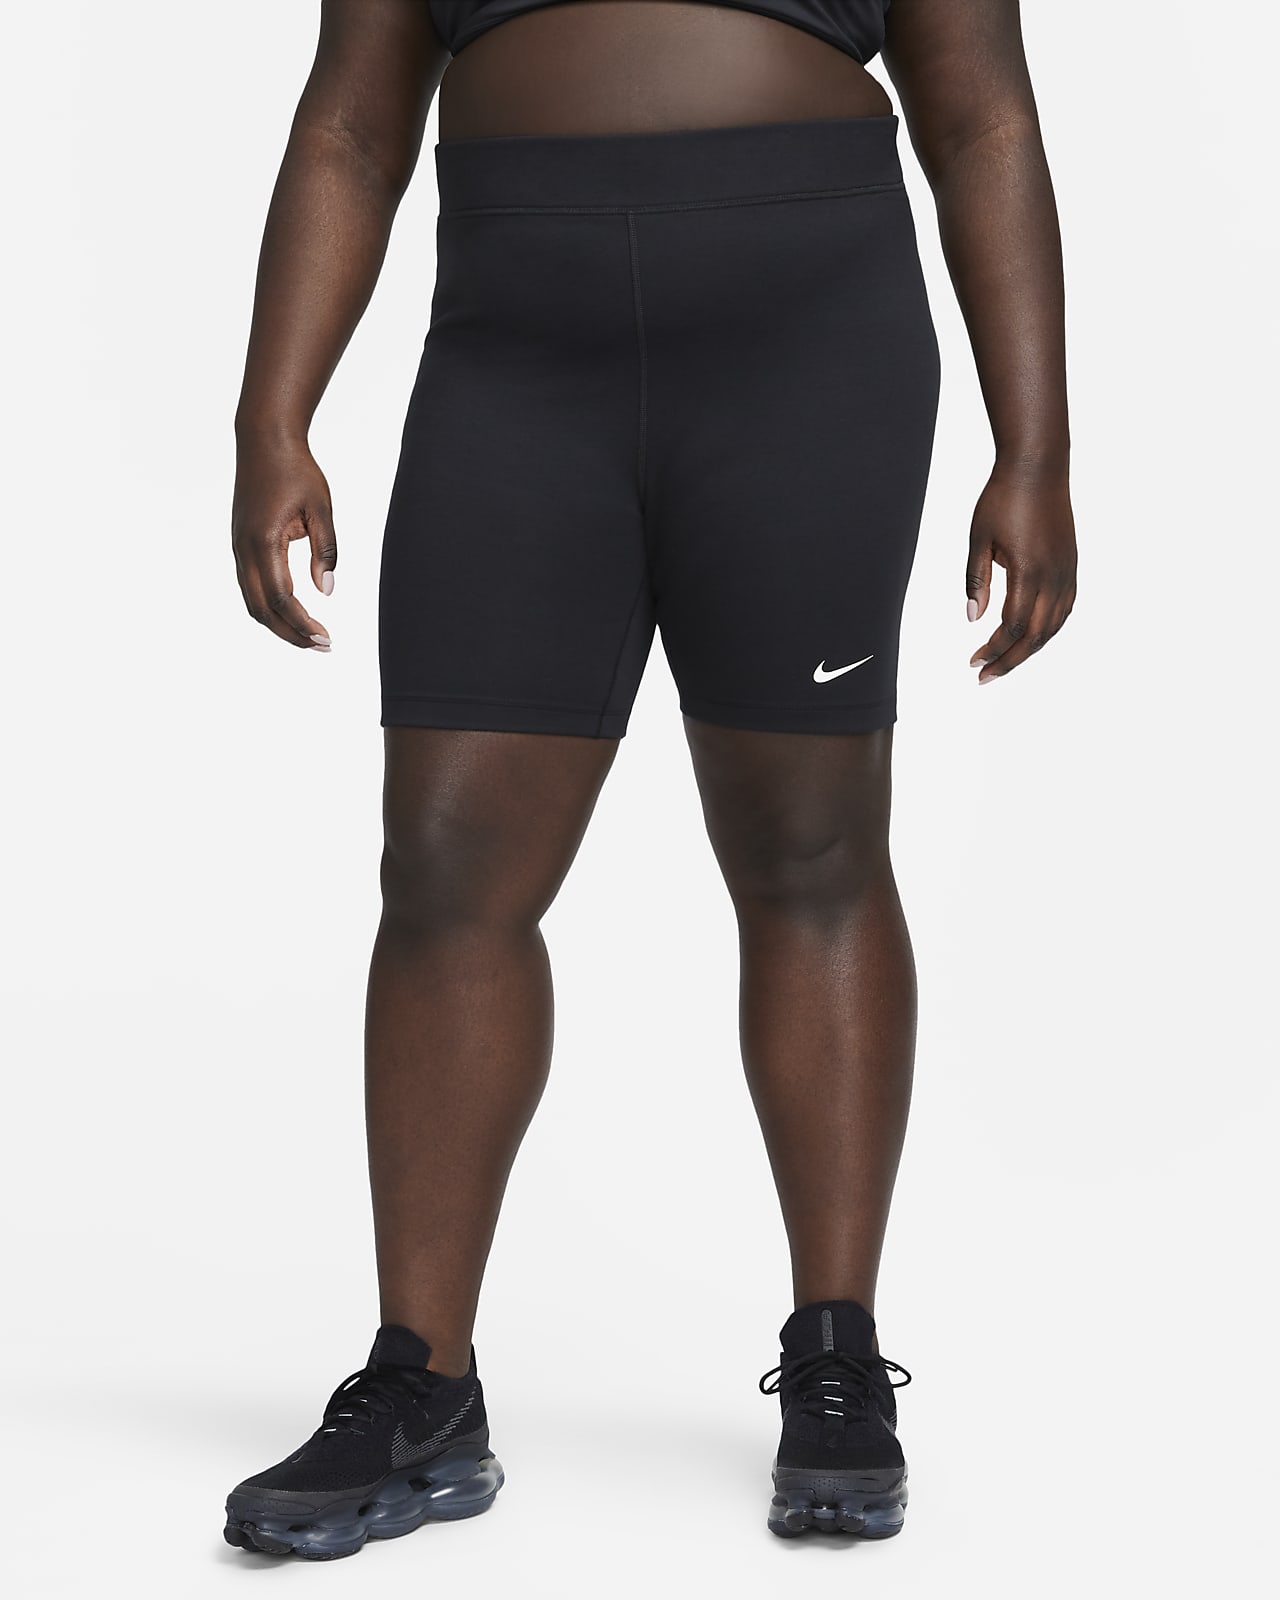 Calções tipo ciclista de cintura subida de 20 cm Nike Sportswear Classic para mulher (tamanhos grandes)